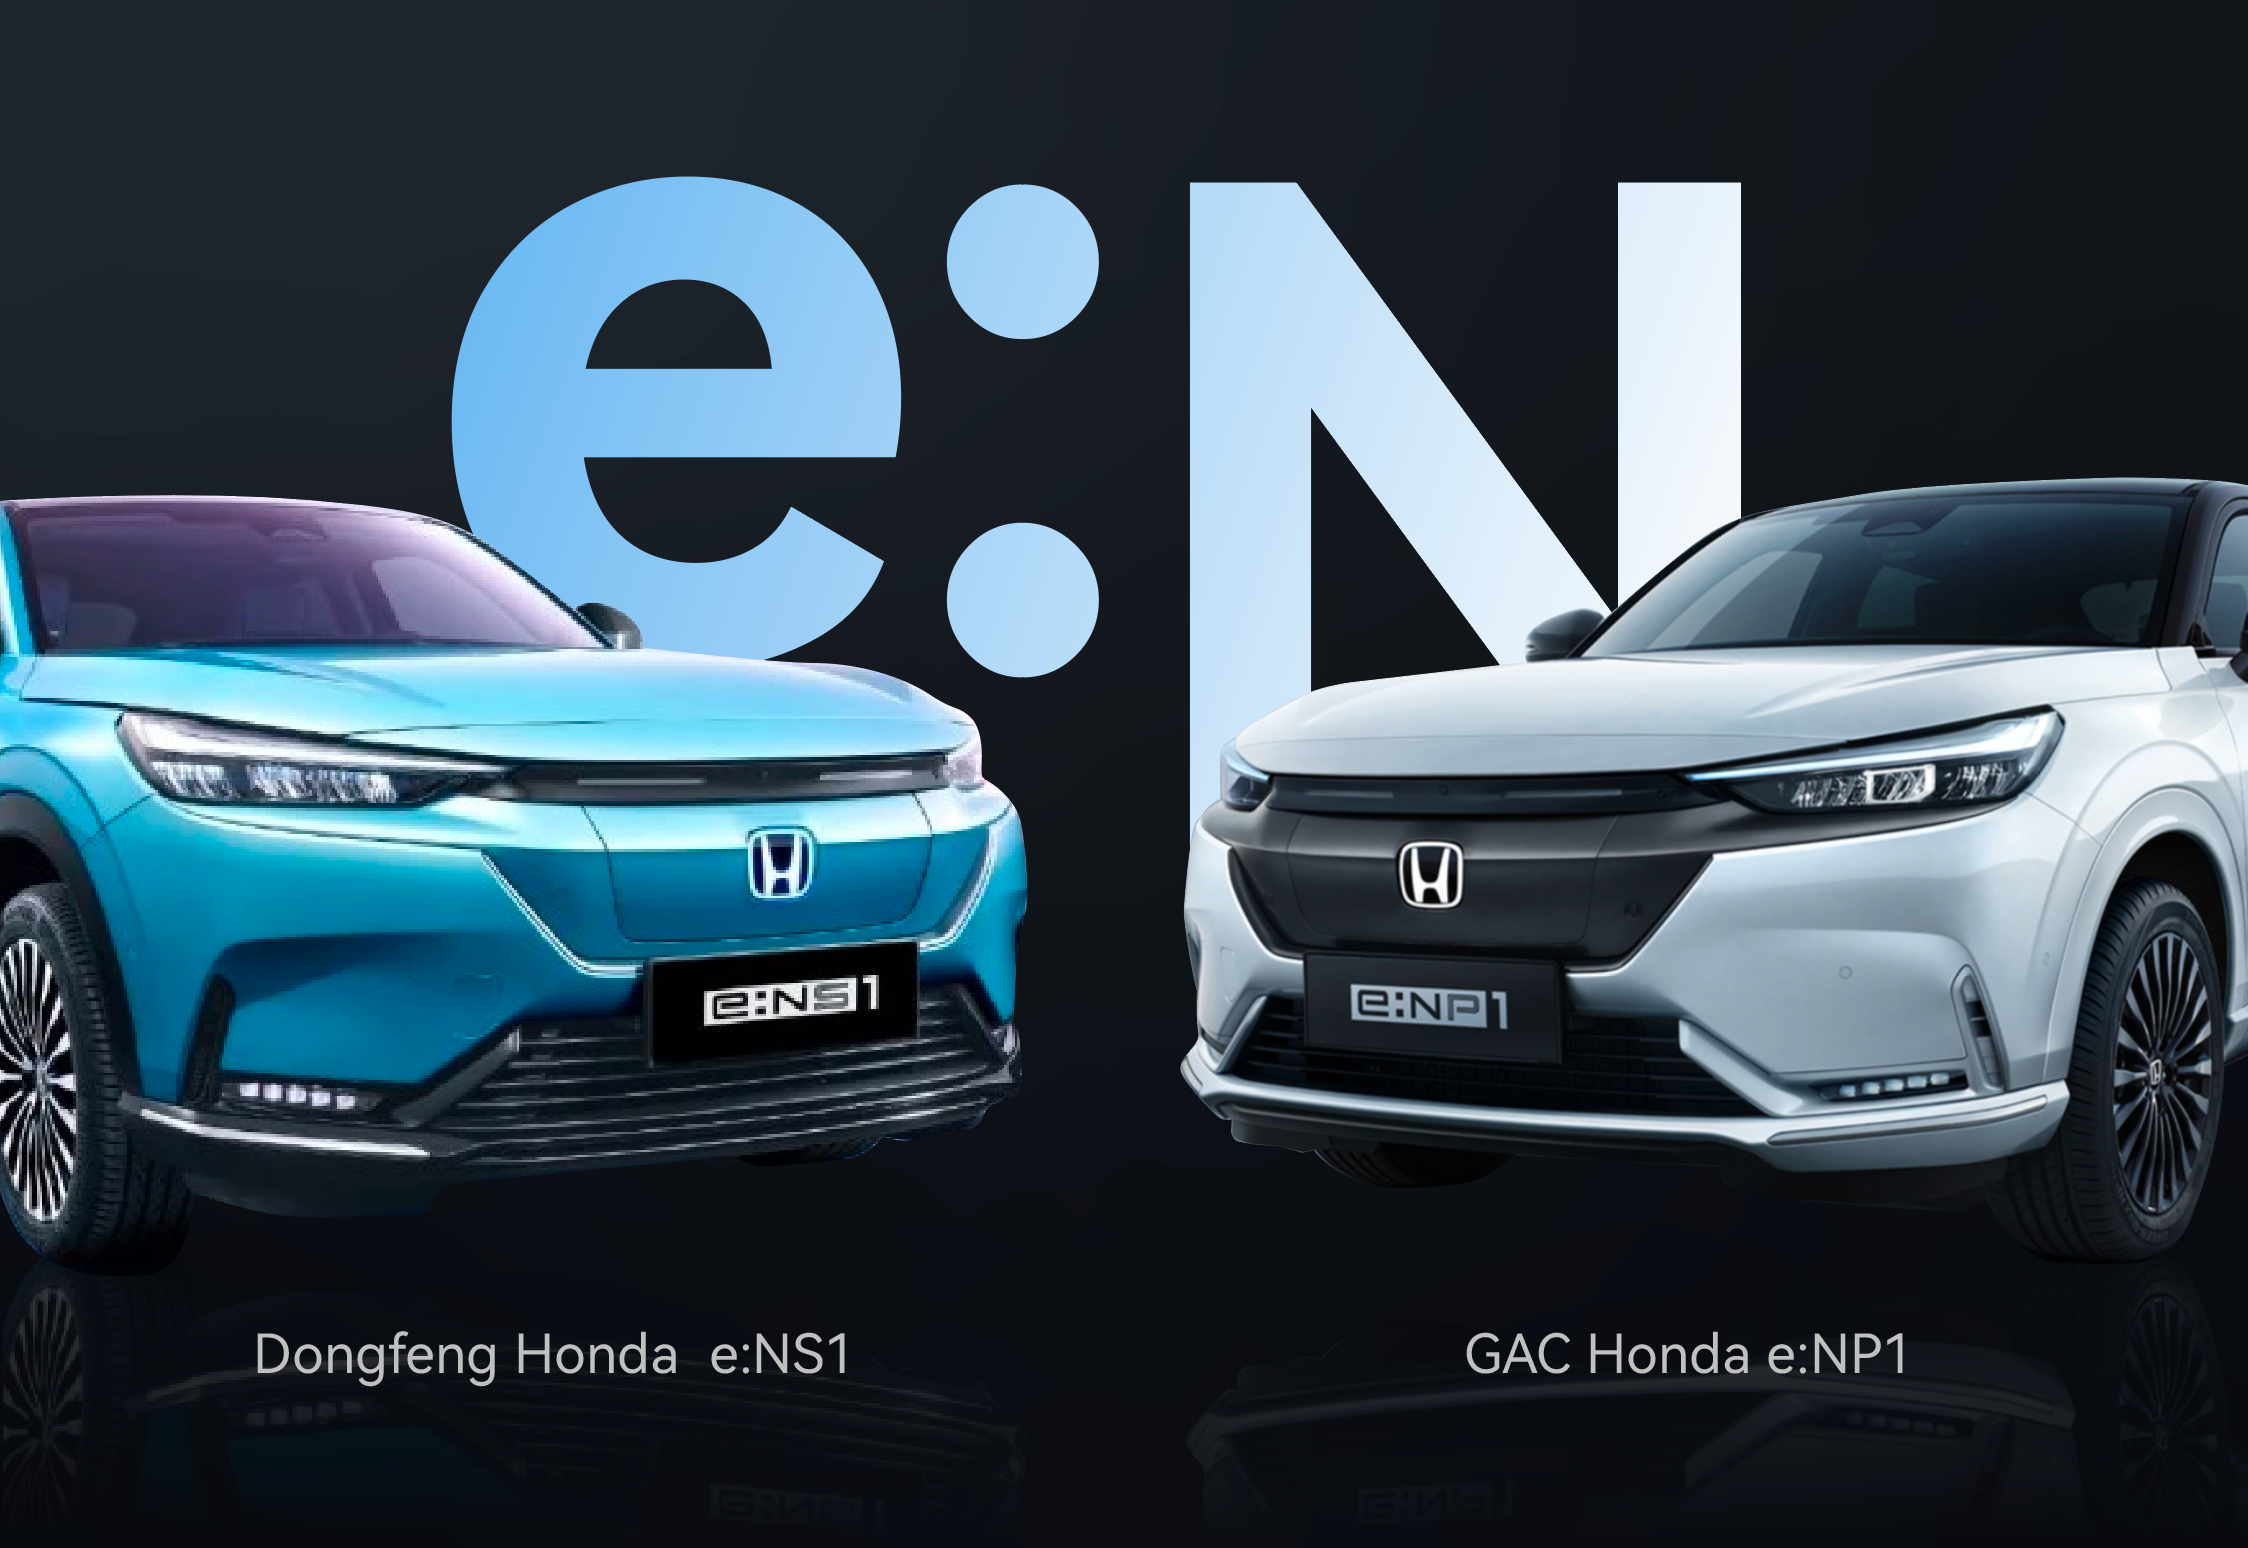 Dongfeng Honda eNS1 and GAC Honda eNP1.png